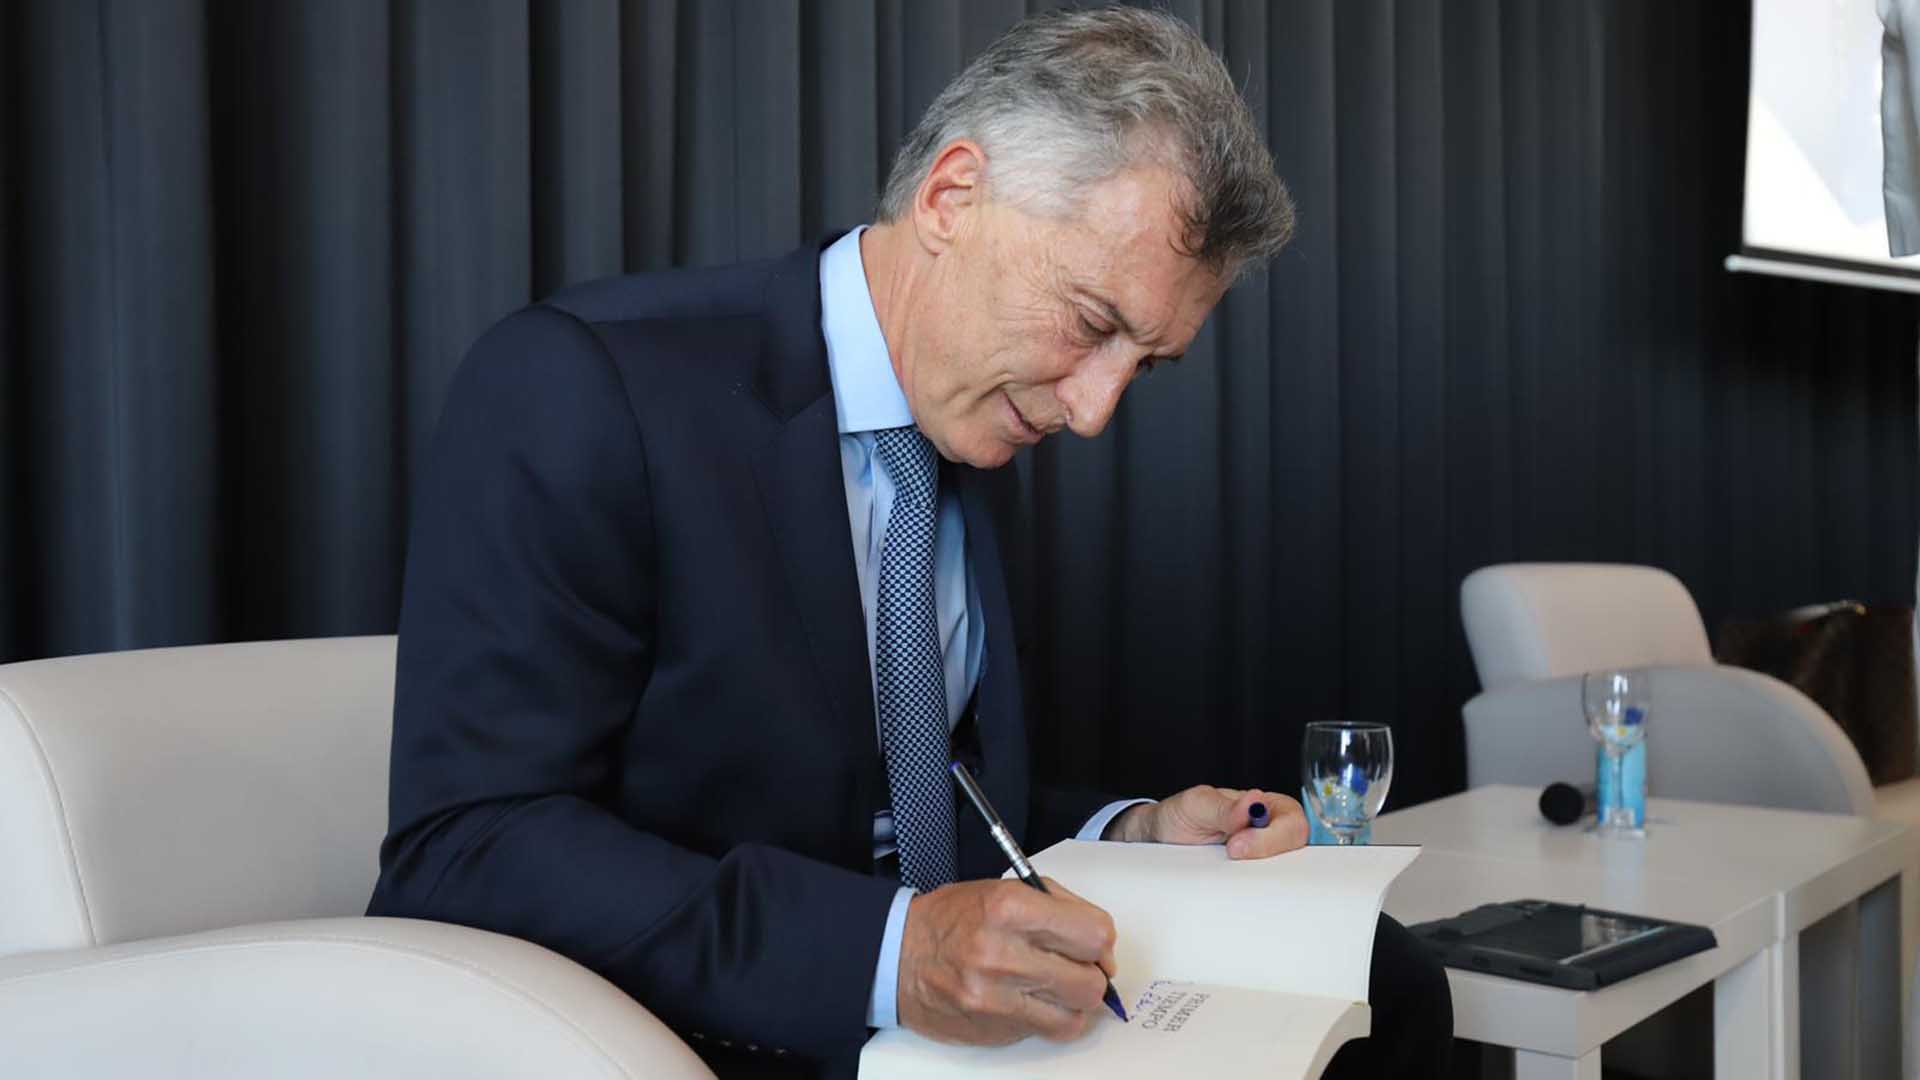 Tras presentar su libro, Mauricio Macri dedicará 45 minutos a firmar ejemplares a los invitados